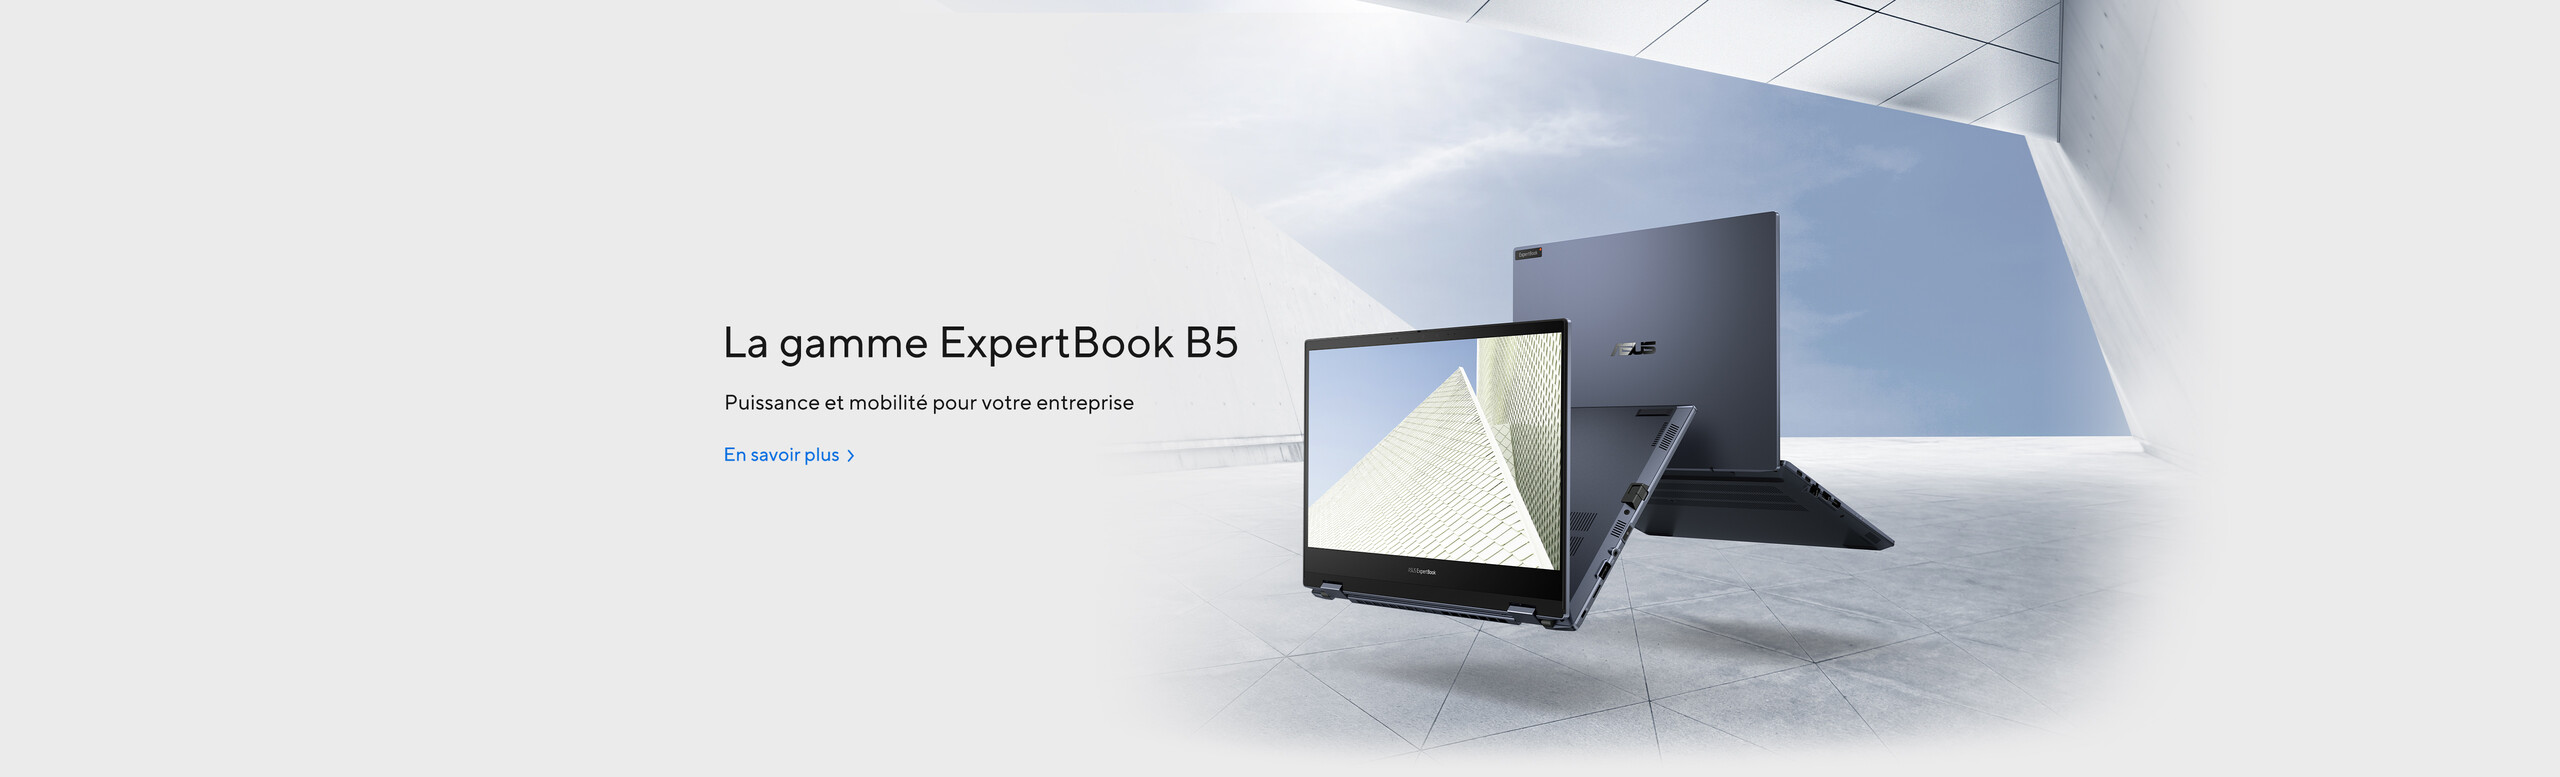 Asus Expert Book B5 - Puissance et mobilité pour votre entreprise